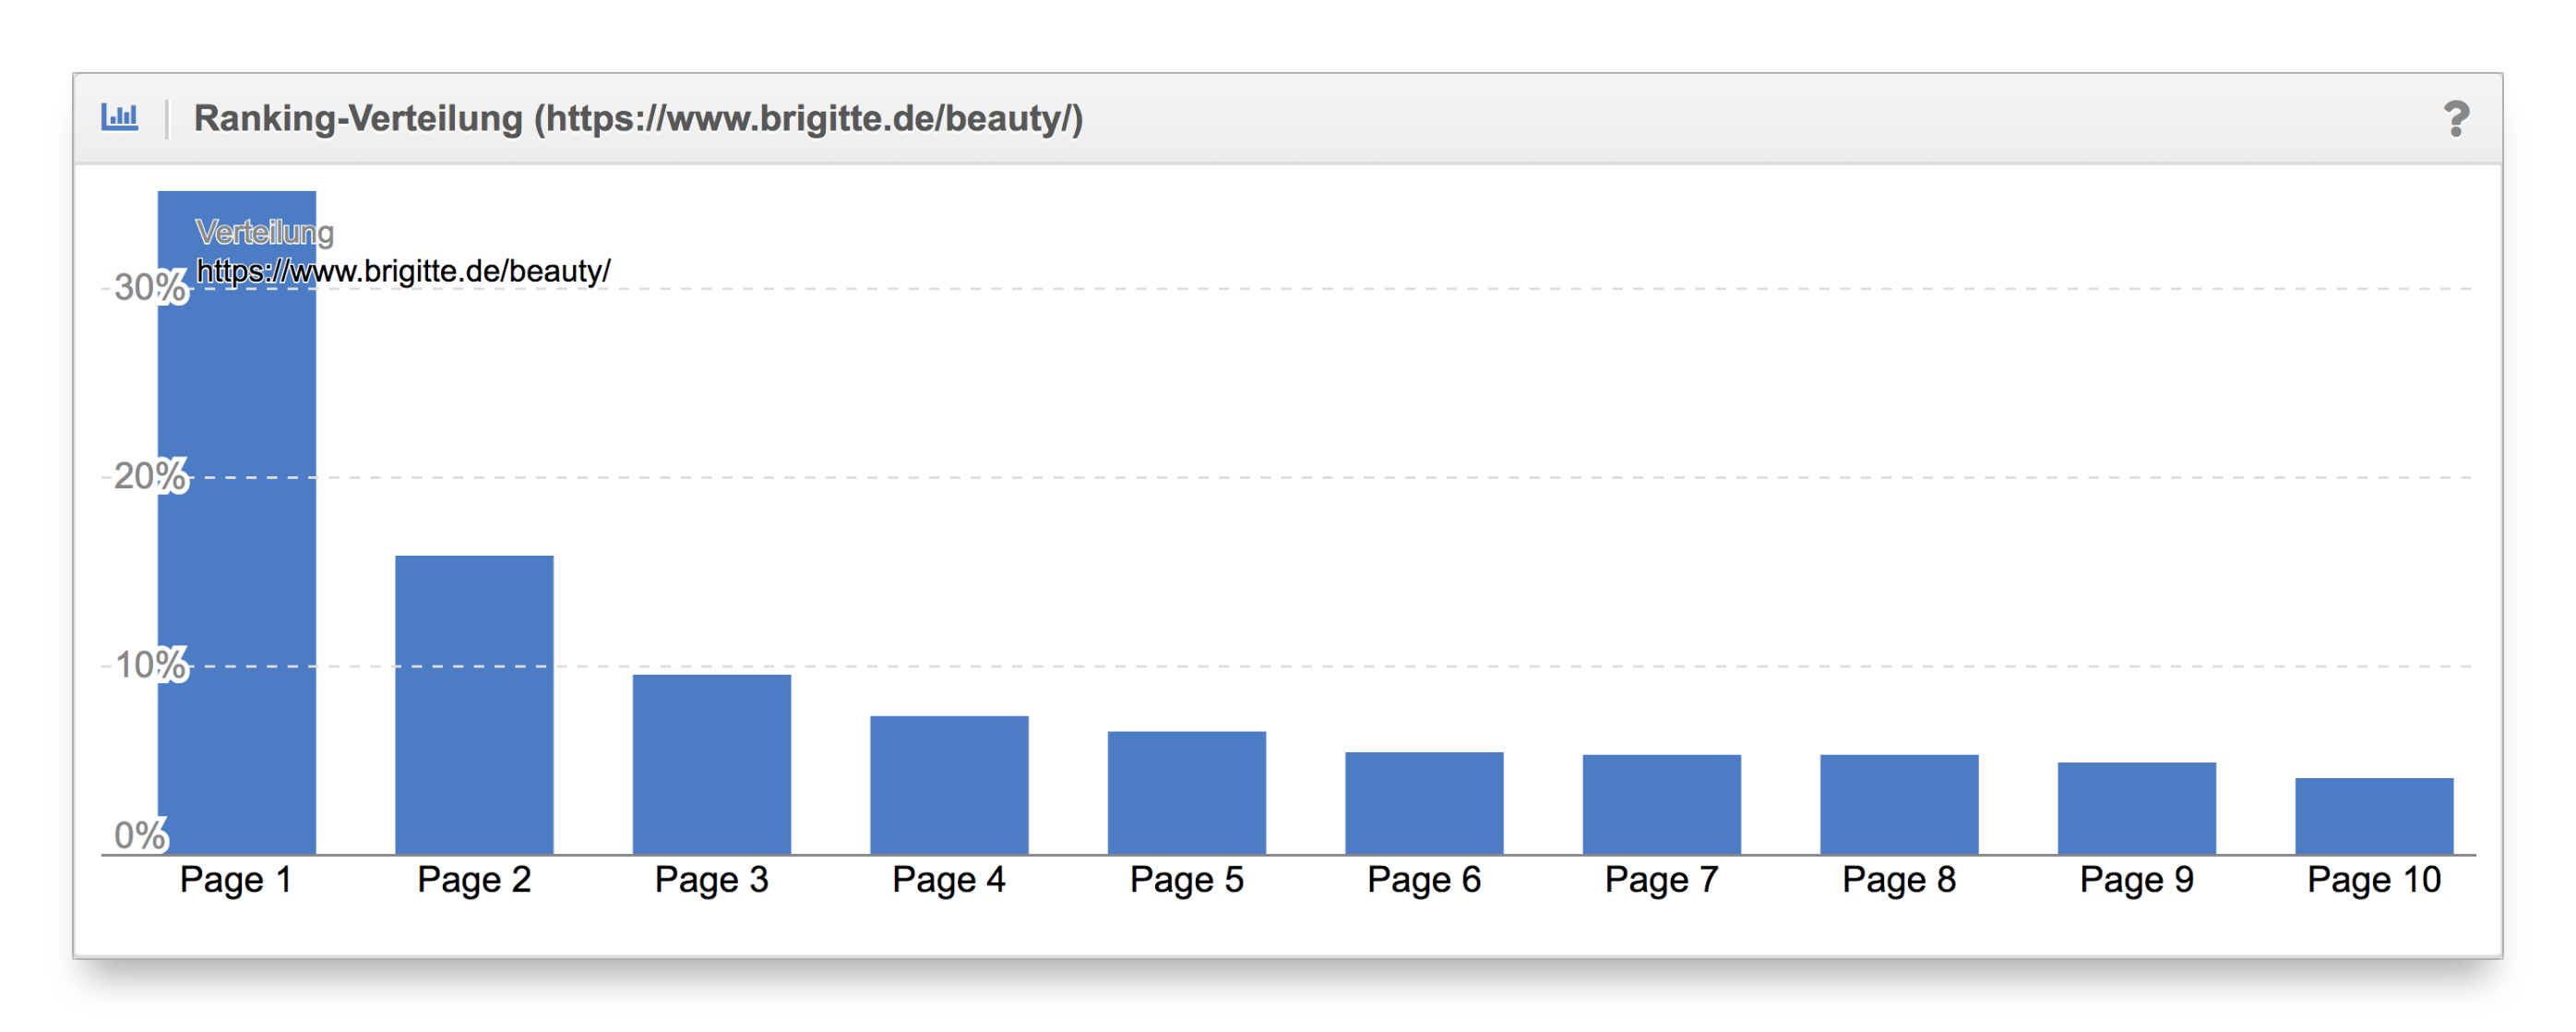 Vergleich Ranking-Verteilung Content-Formate brigitte.de